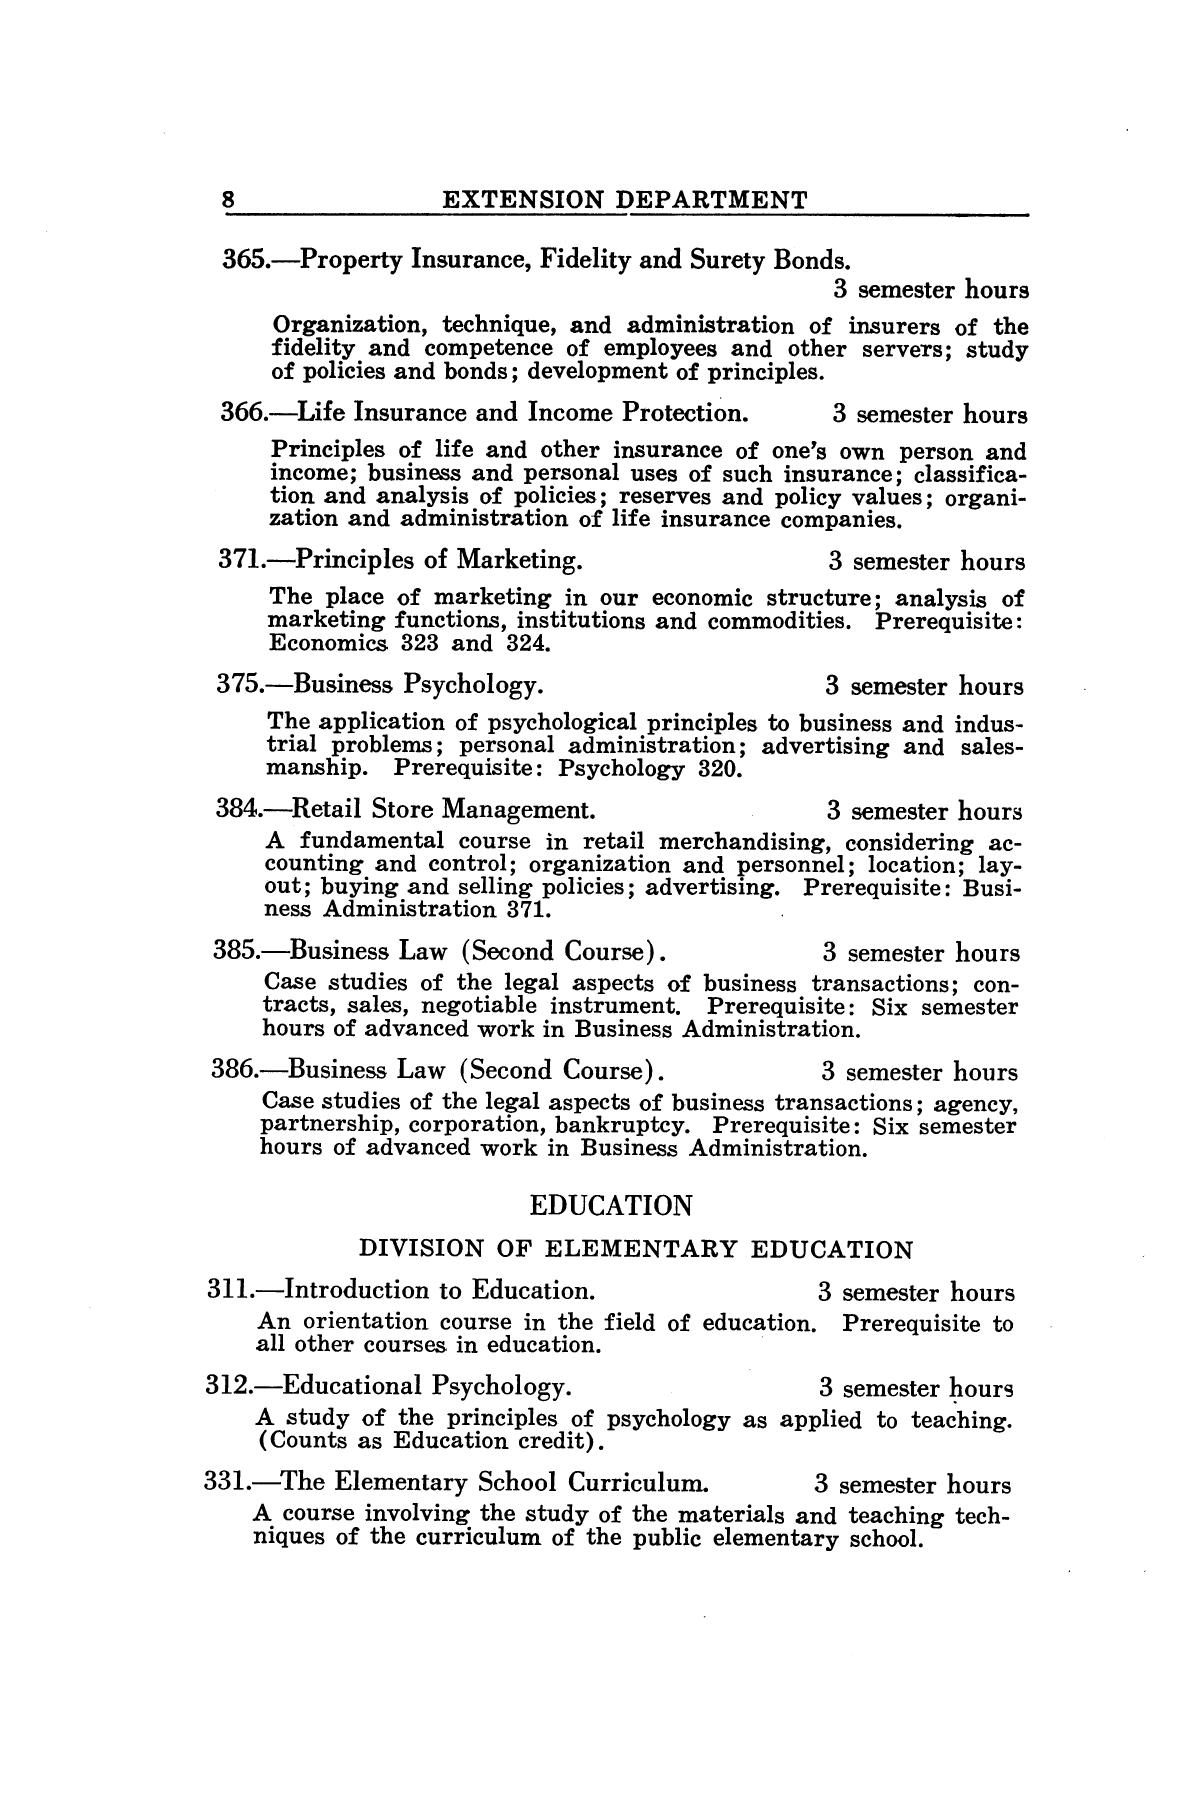 Catalog of Abilene Christian College, 1941-1942
                                                
                                                    8
                                                